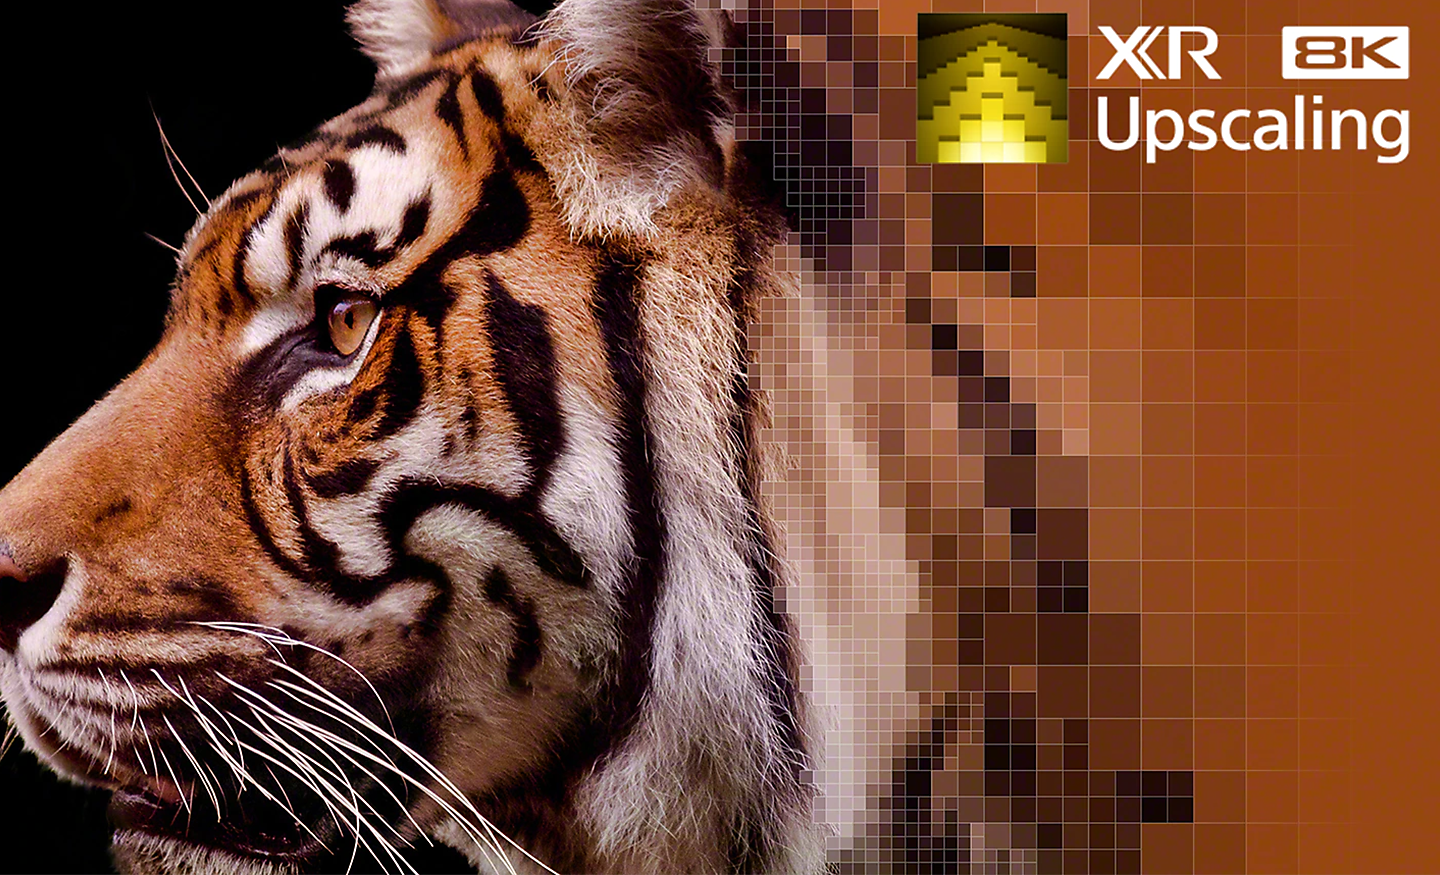 Gros plan des motifs de la fourrure d’un tigre montrant l’effet de la conversion ascendante XR 8K